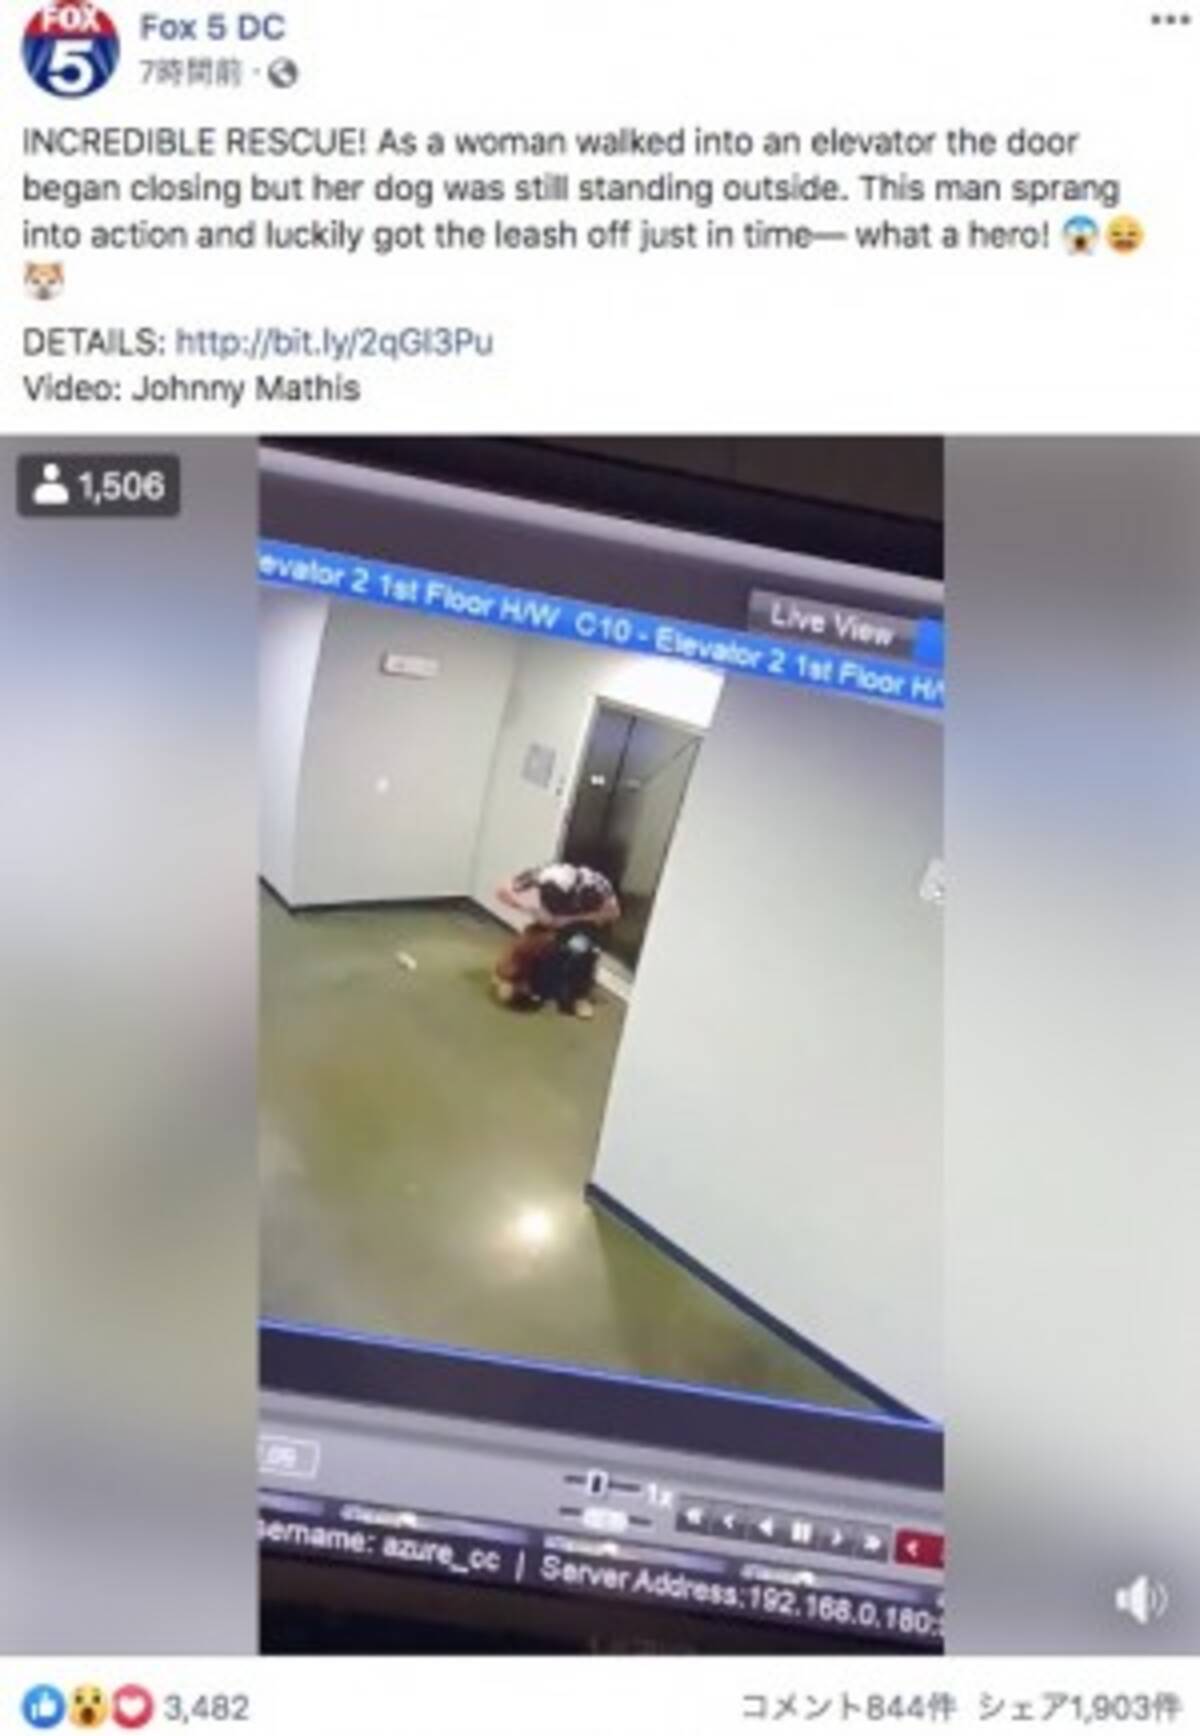 エレベーターで宙吊り寸前の犬を救った男性 無我夢中だった 米 動画あり 19年12月14日 エキサイトニュース